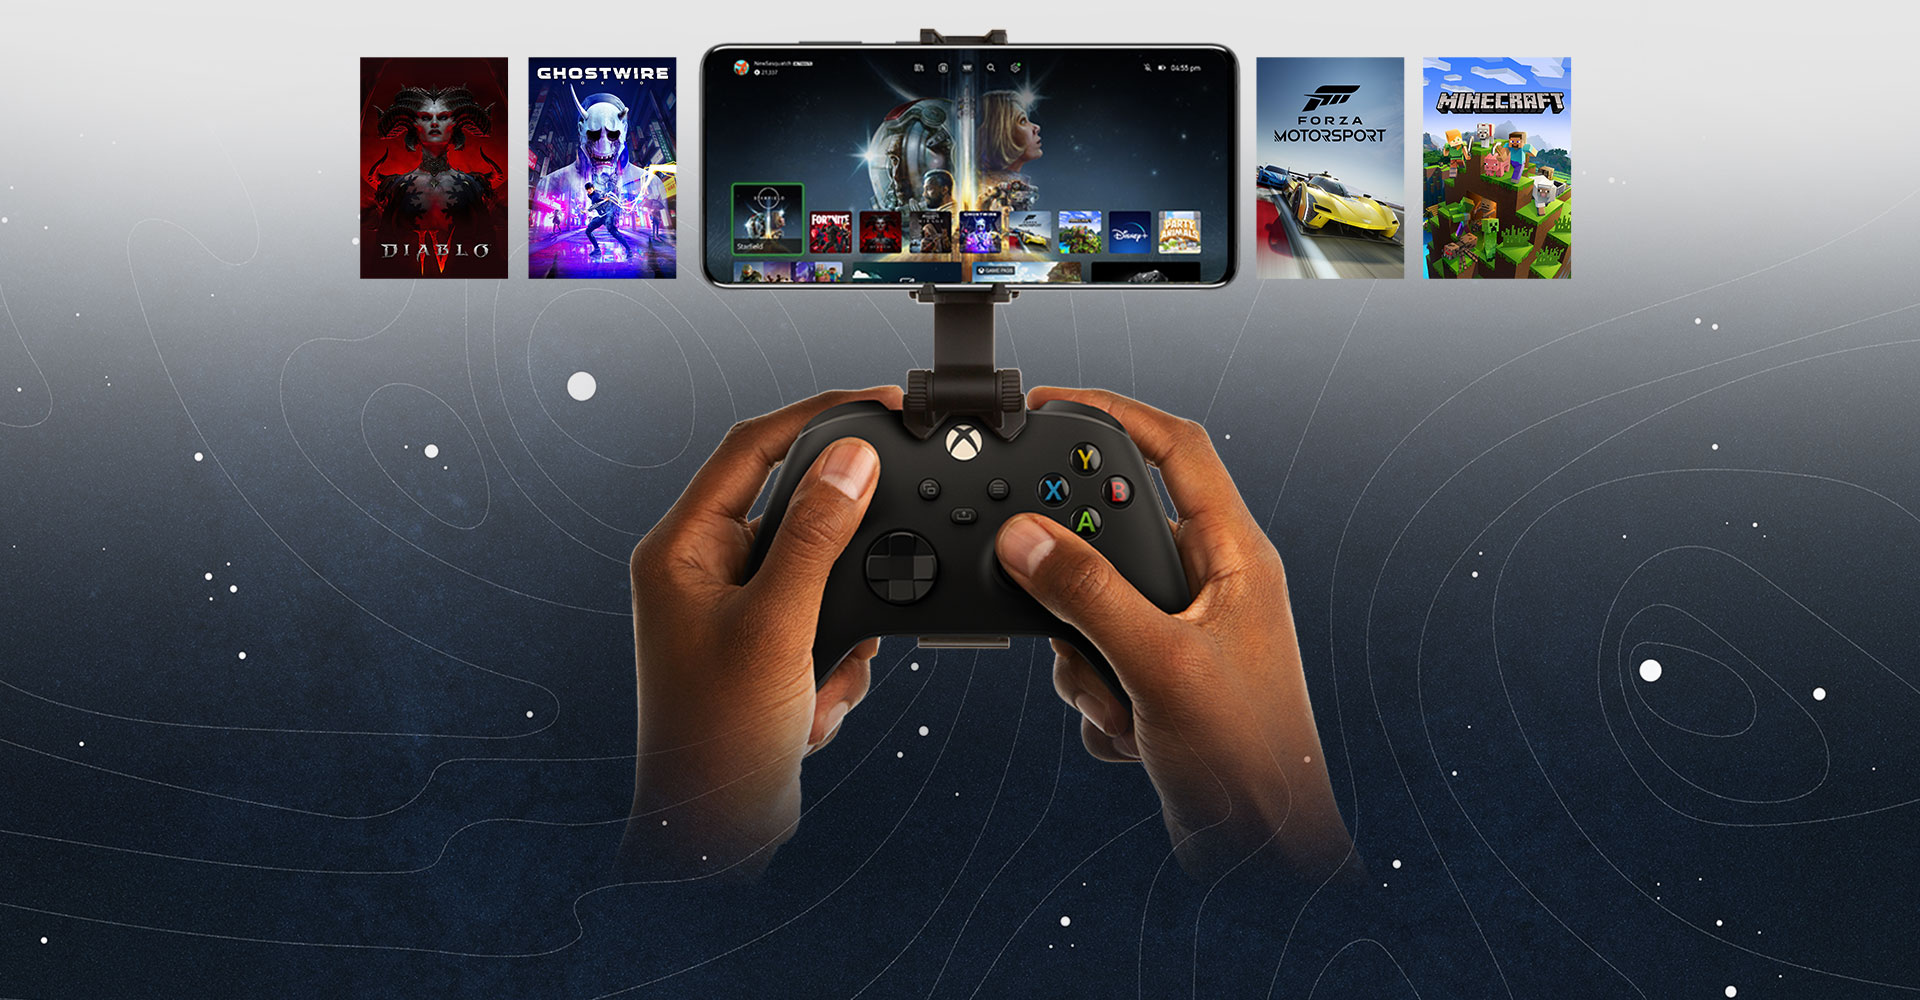 將行動裝置連接到 Xbox 控制器，其中顯示可供遊玩的遊戲選項。Halo Infinite 的世界不再侷限於手機。